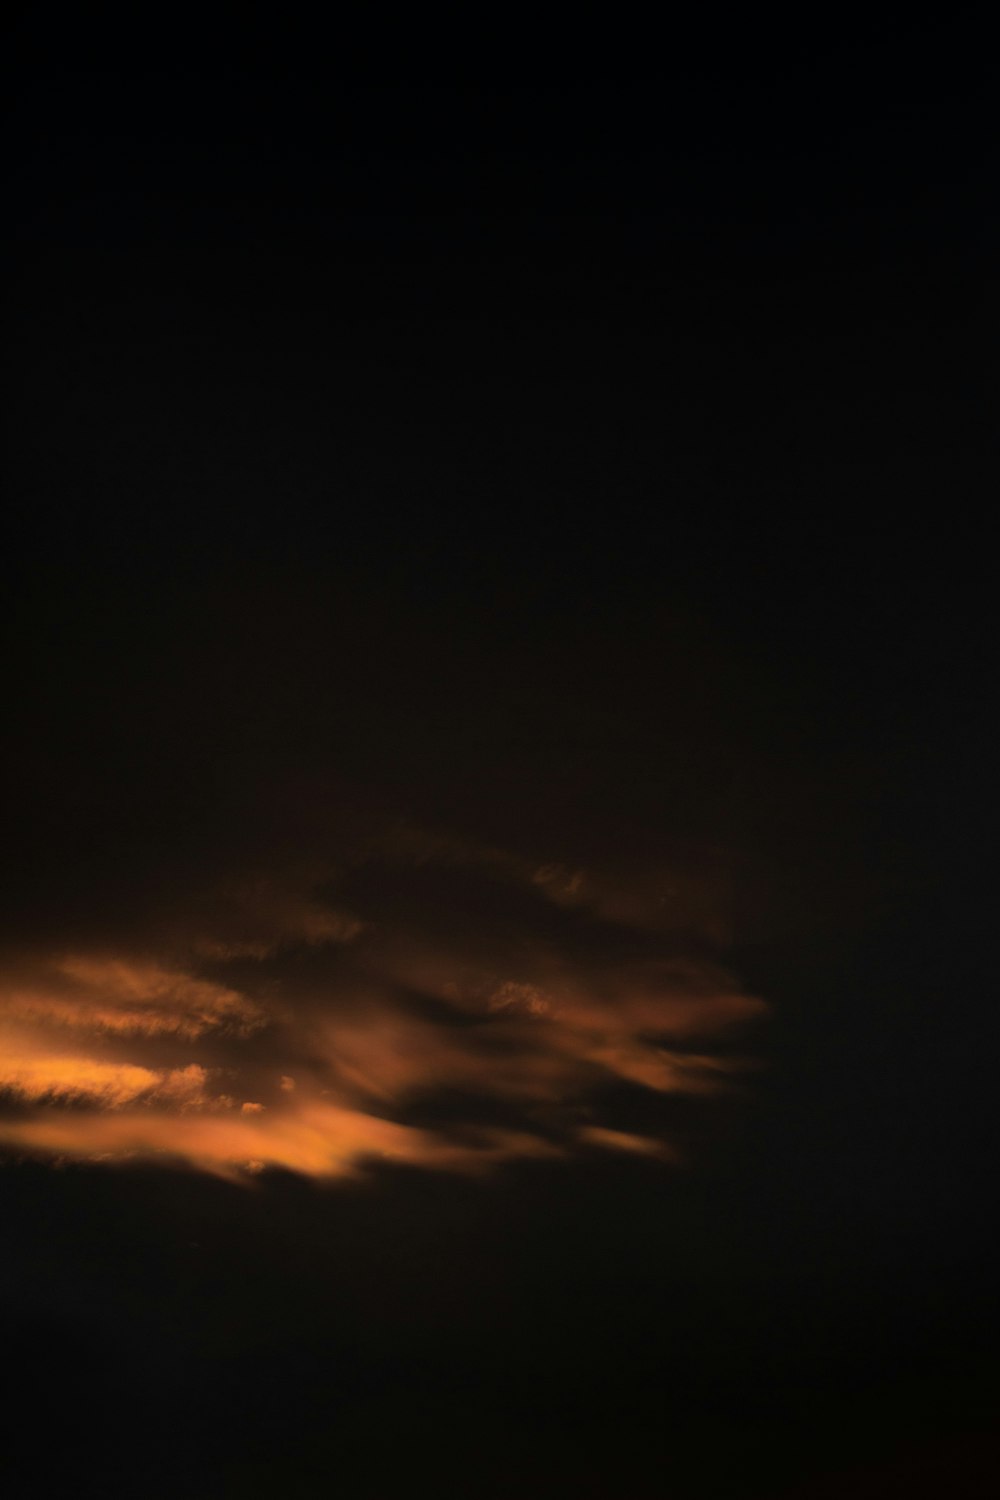 日没時のオレンジと黒の雲